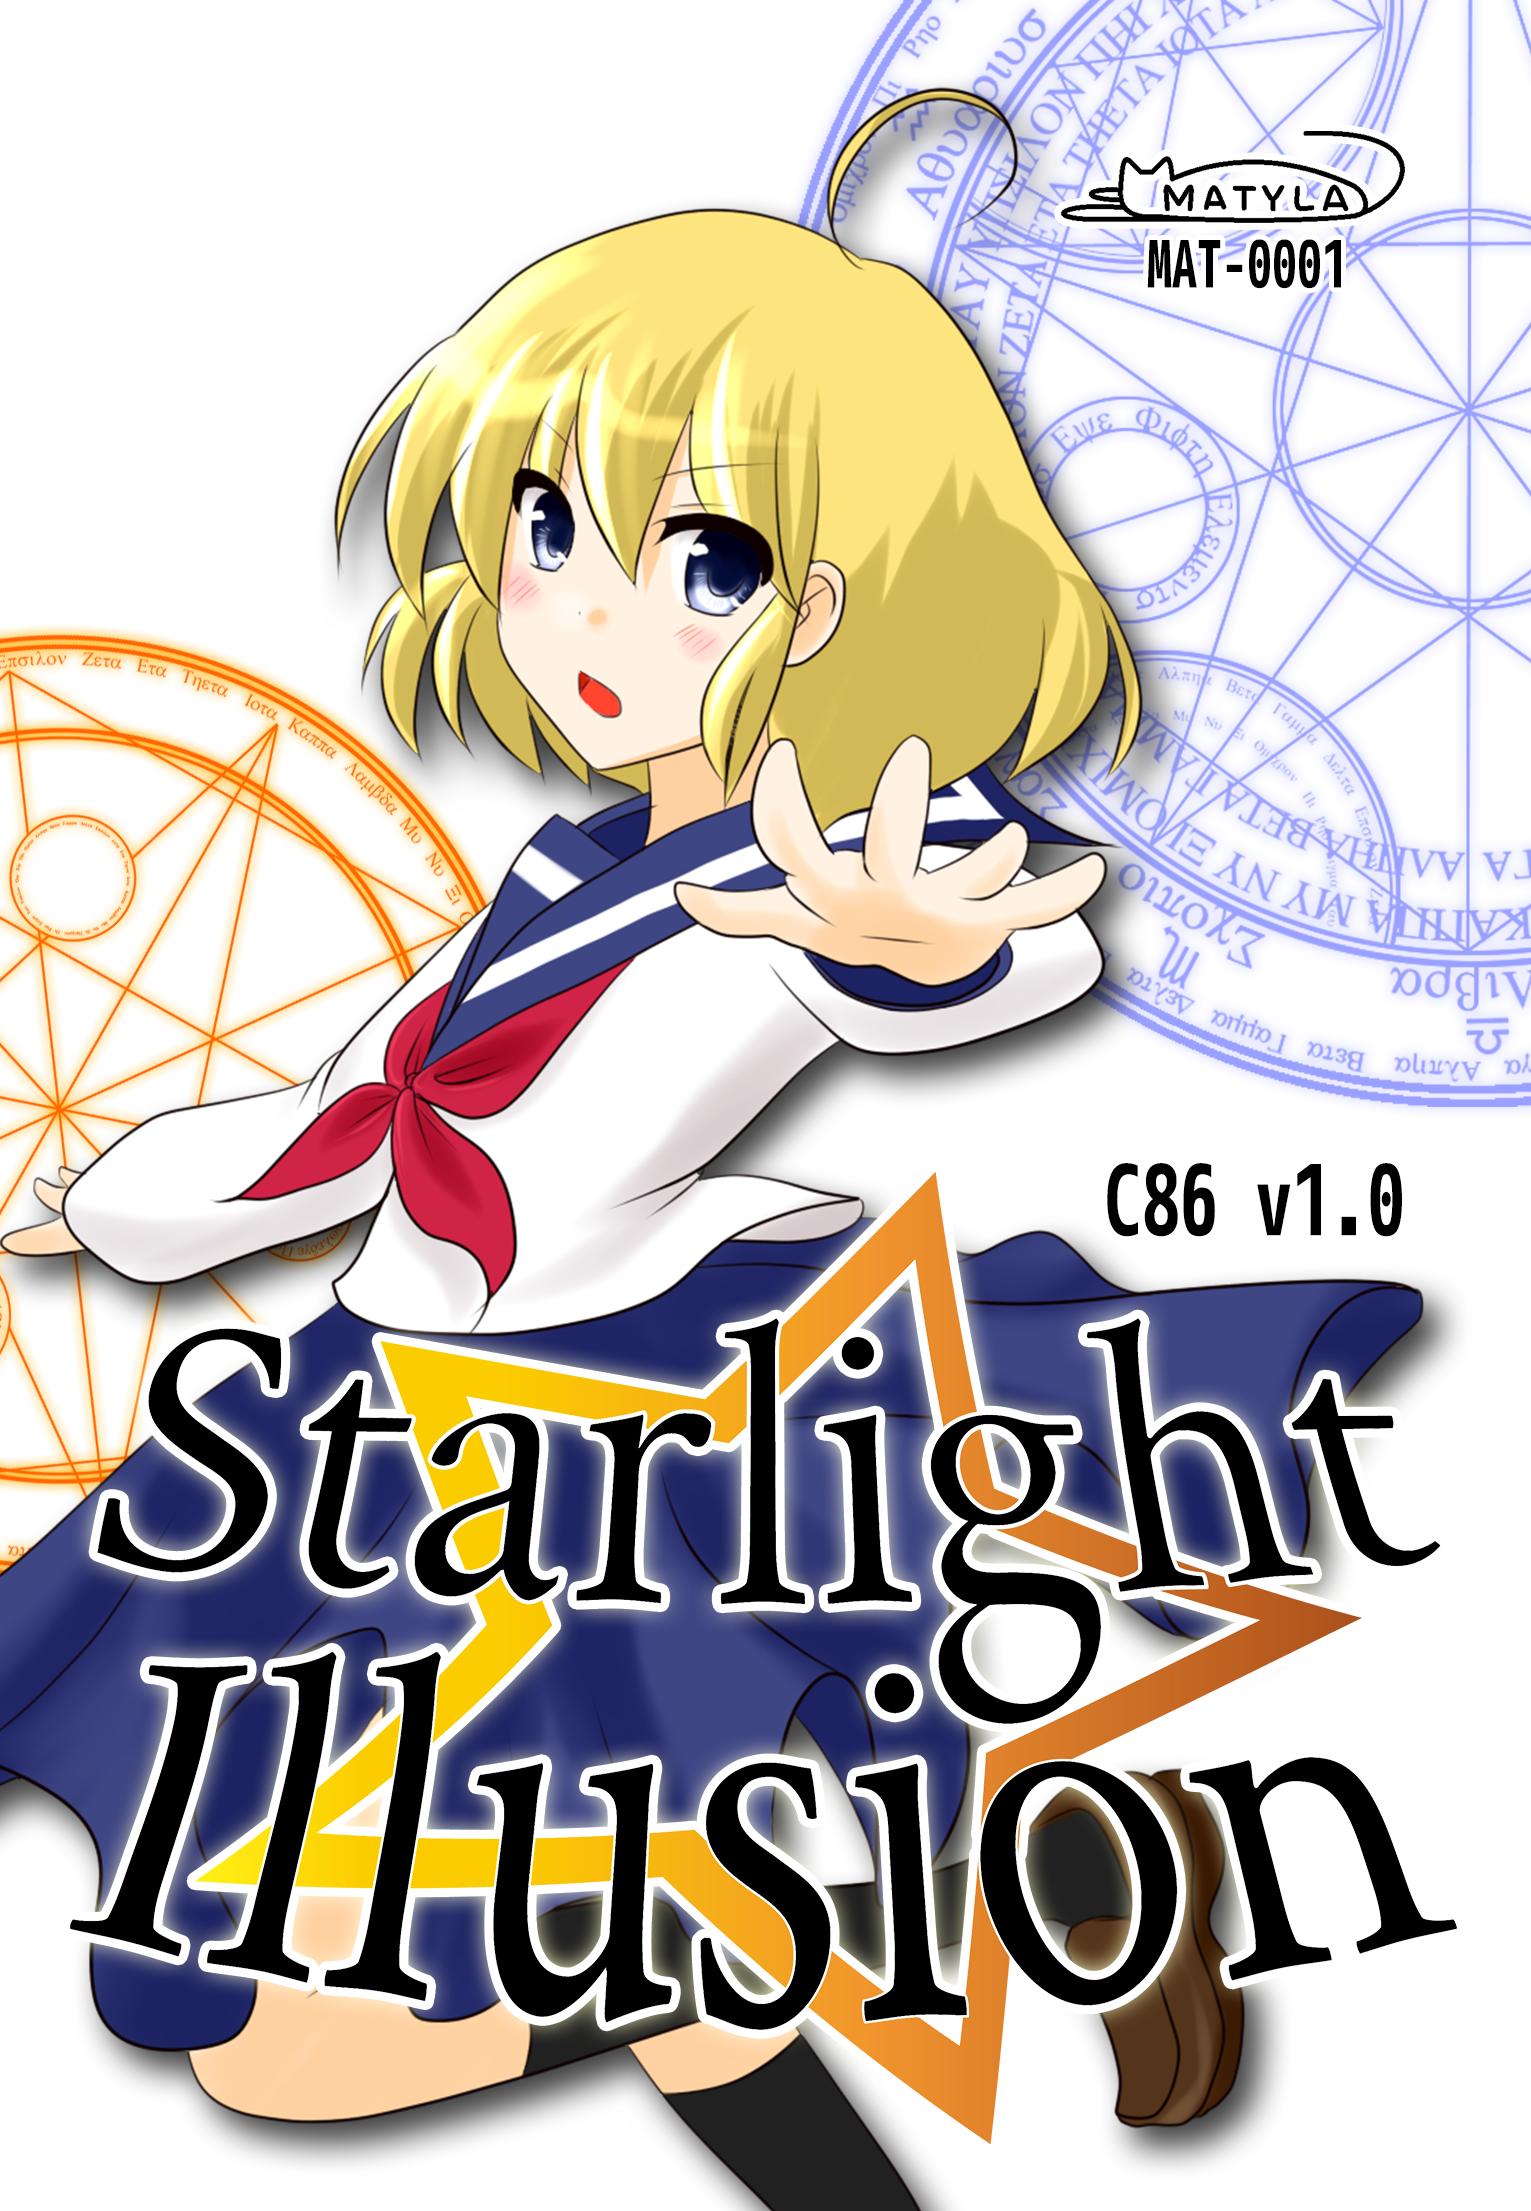 Starlight Illusion